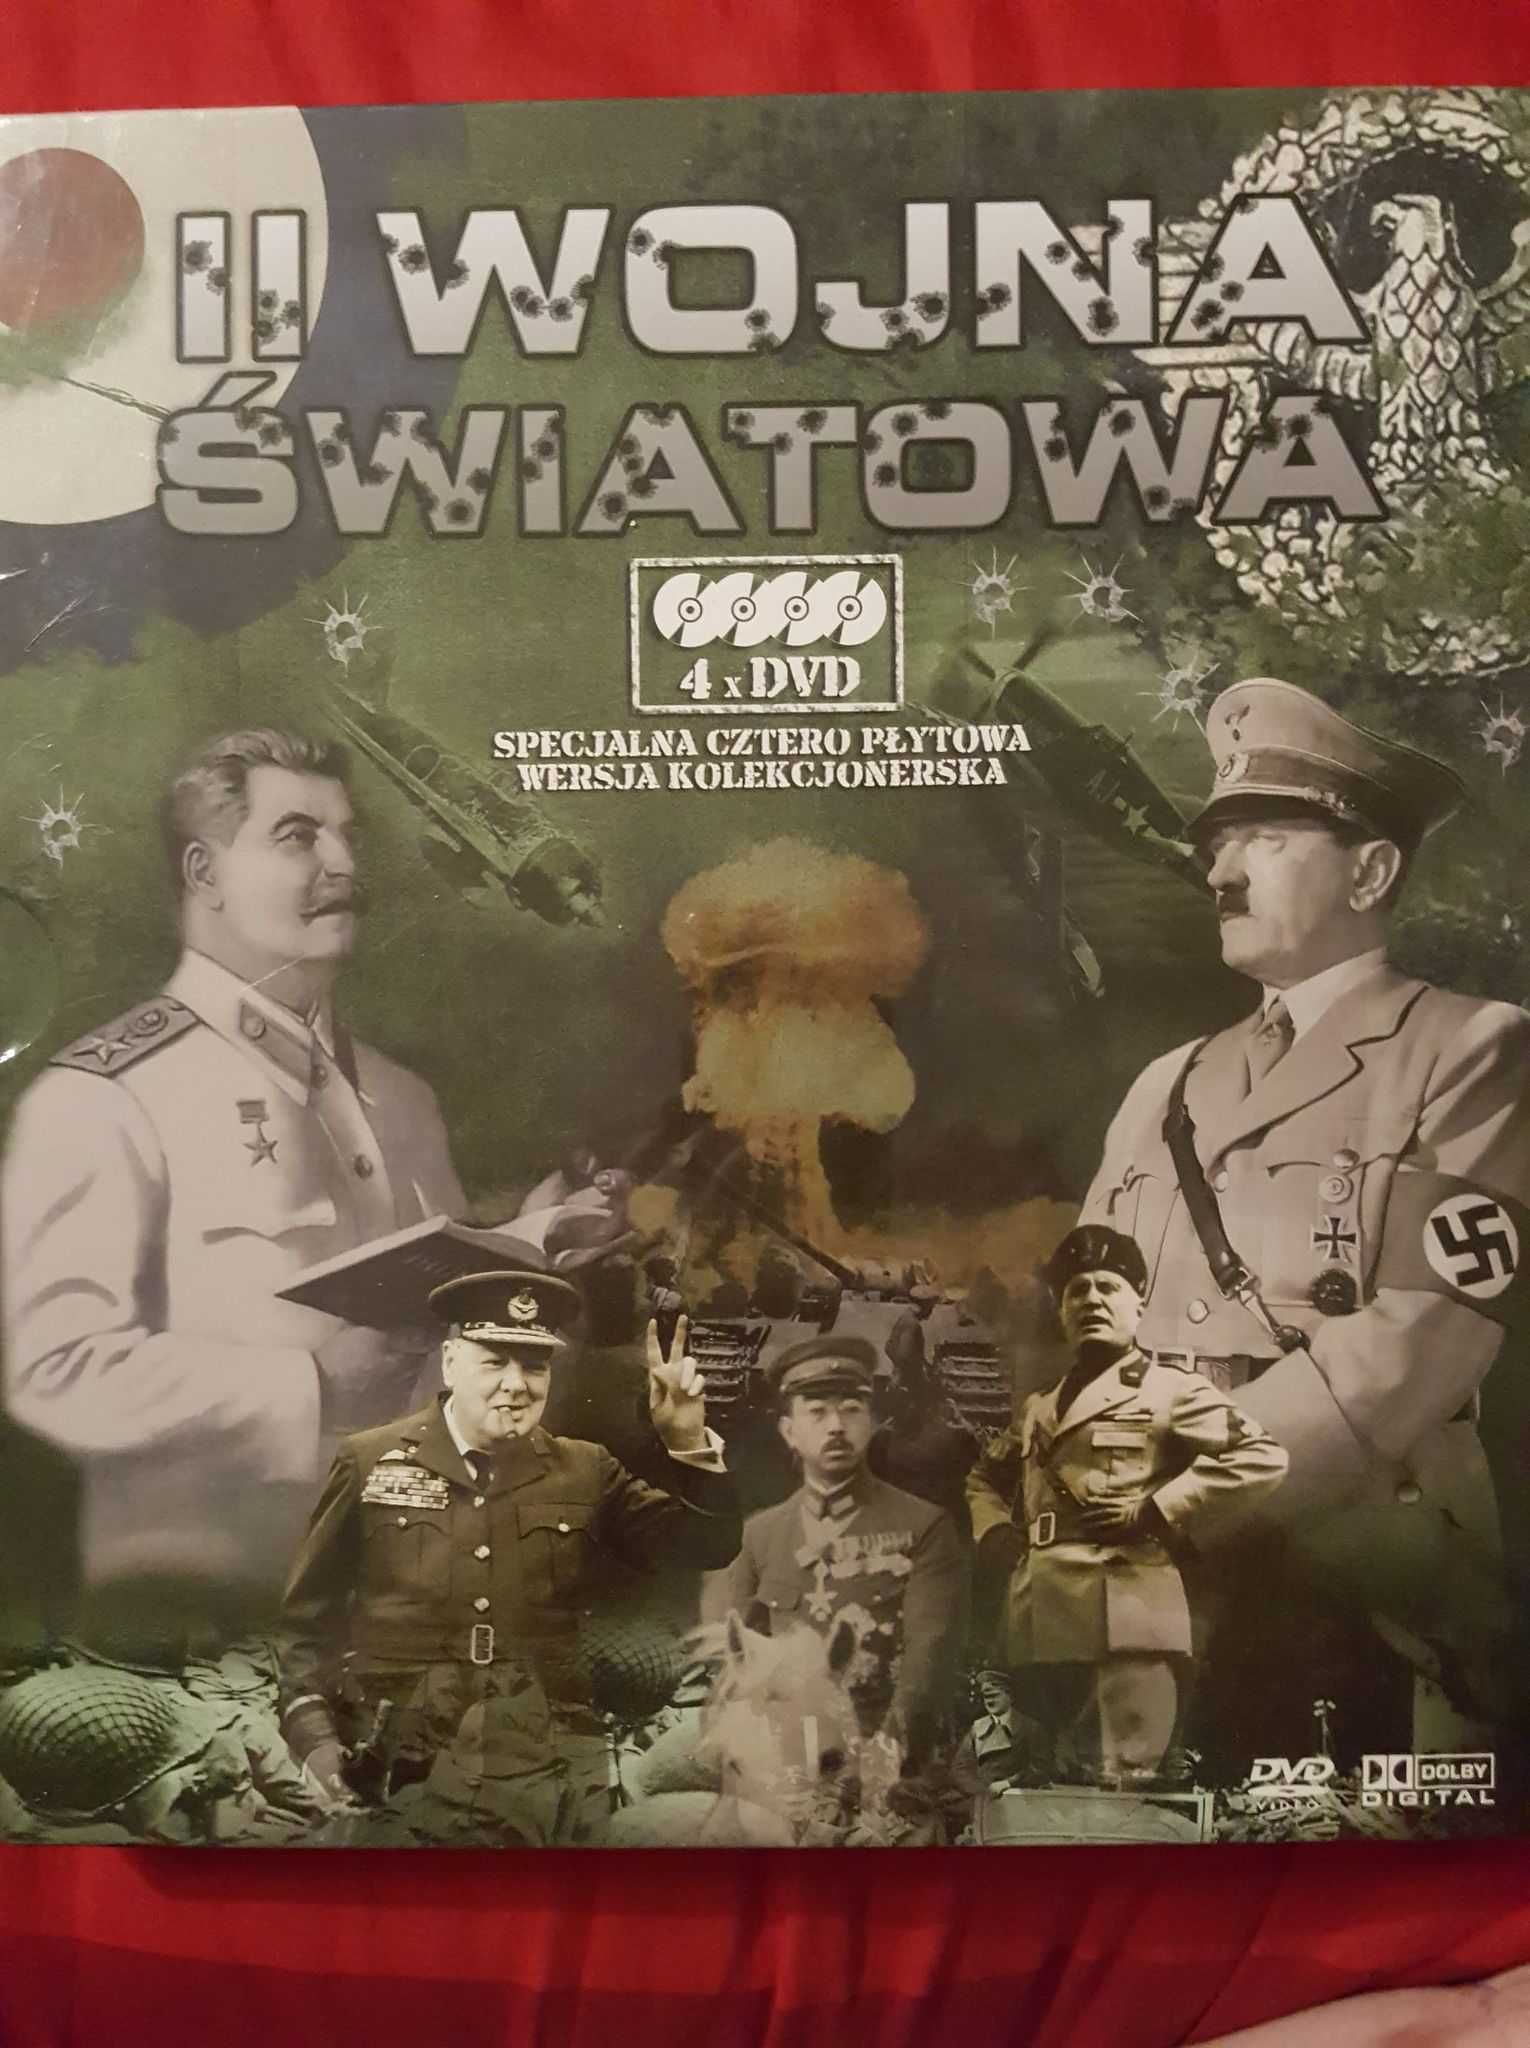 II Wojna Światowa BOX 4DVD
Film II Wojna Światowa płyta DVD